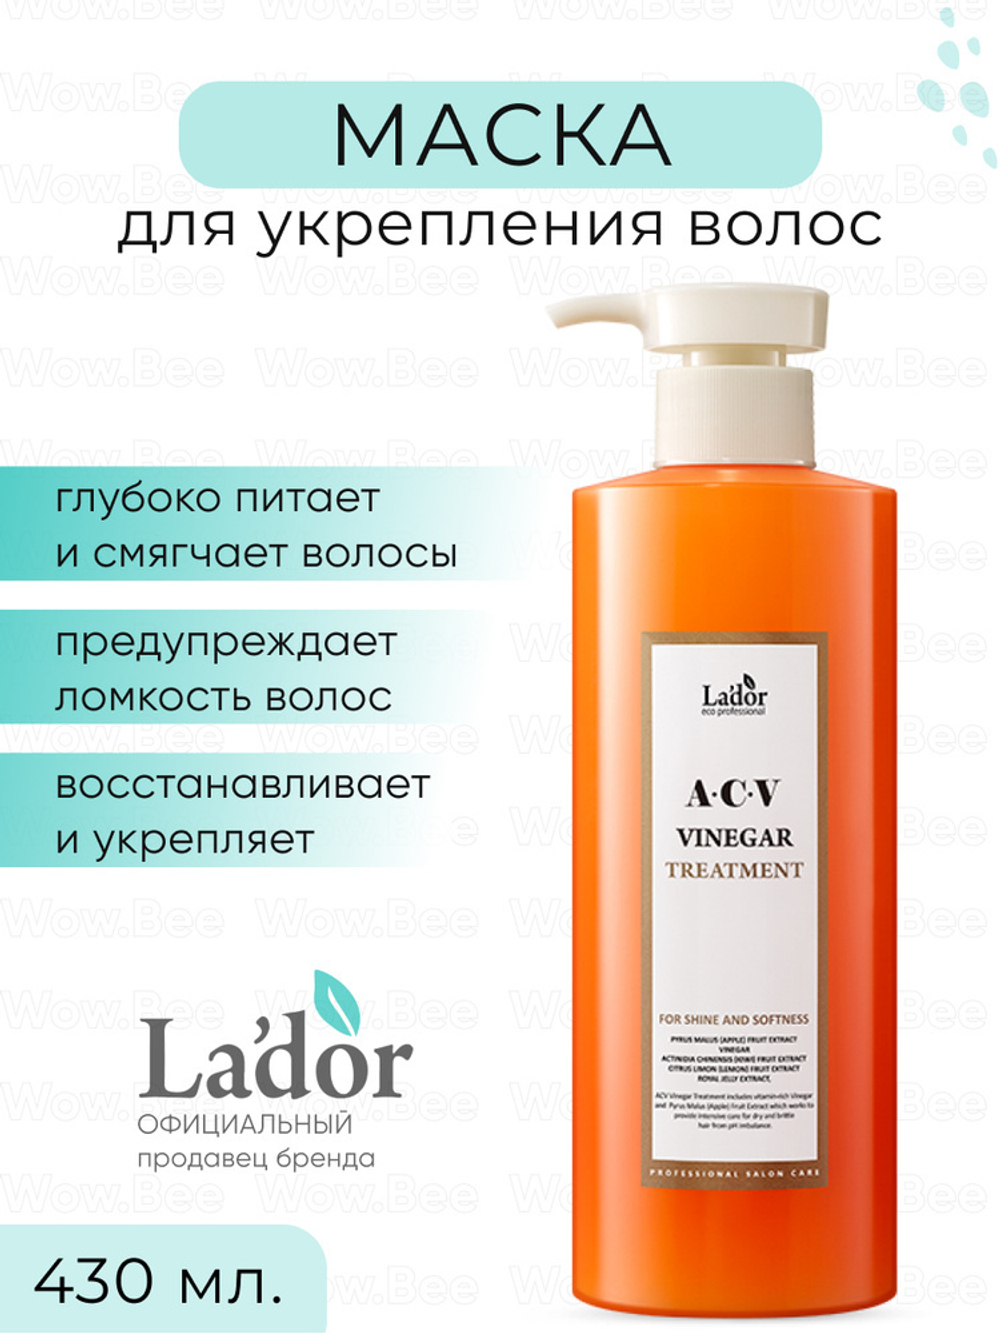 Маска с яблочным уксусом для блеска волос - Lador Vinegar treatment acv, 430 мл